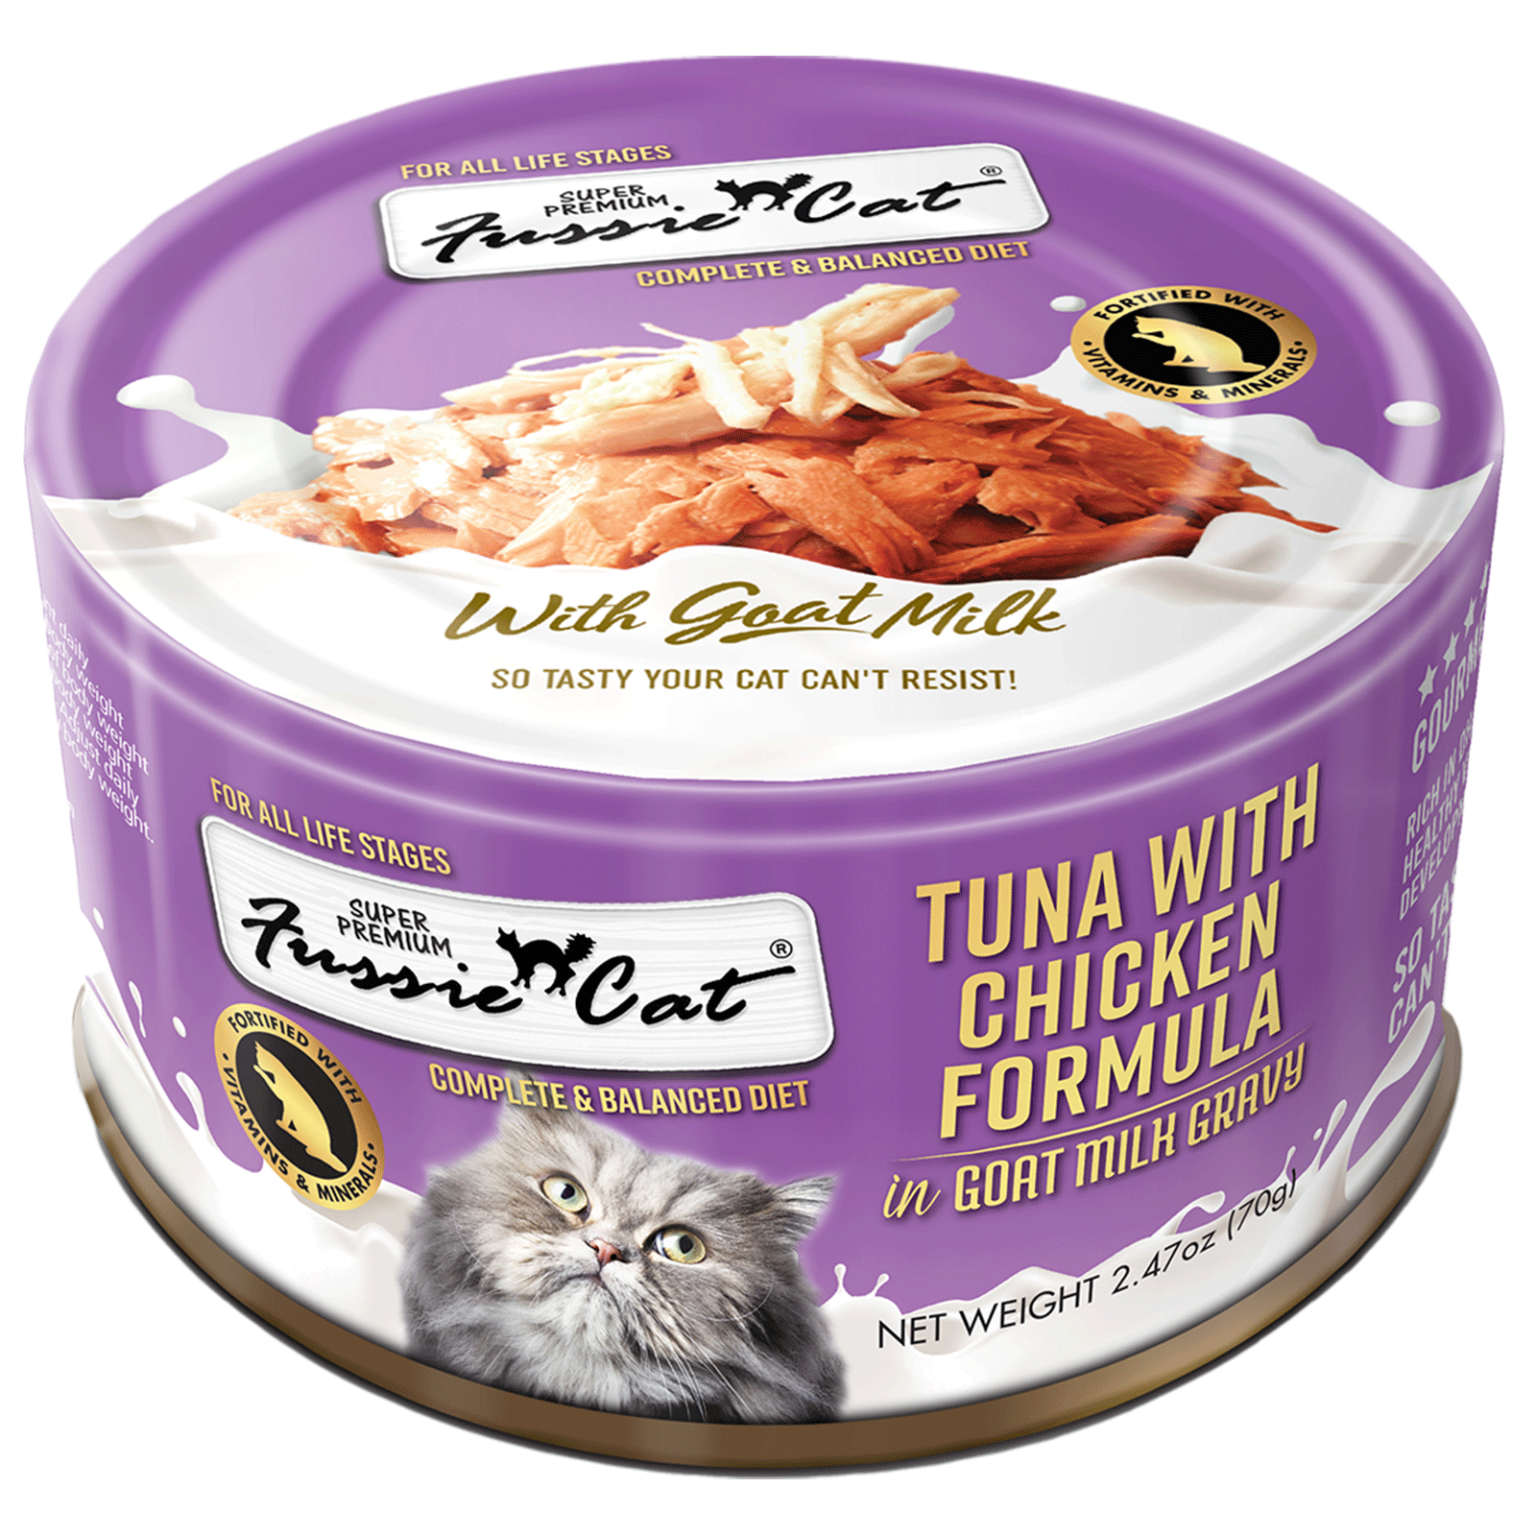 Fussie Cat Canned Tuna With Chicken & Goat Milk Gravy 2.47oz